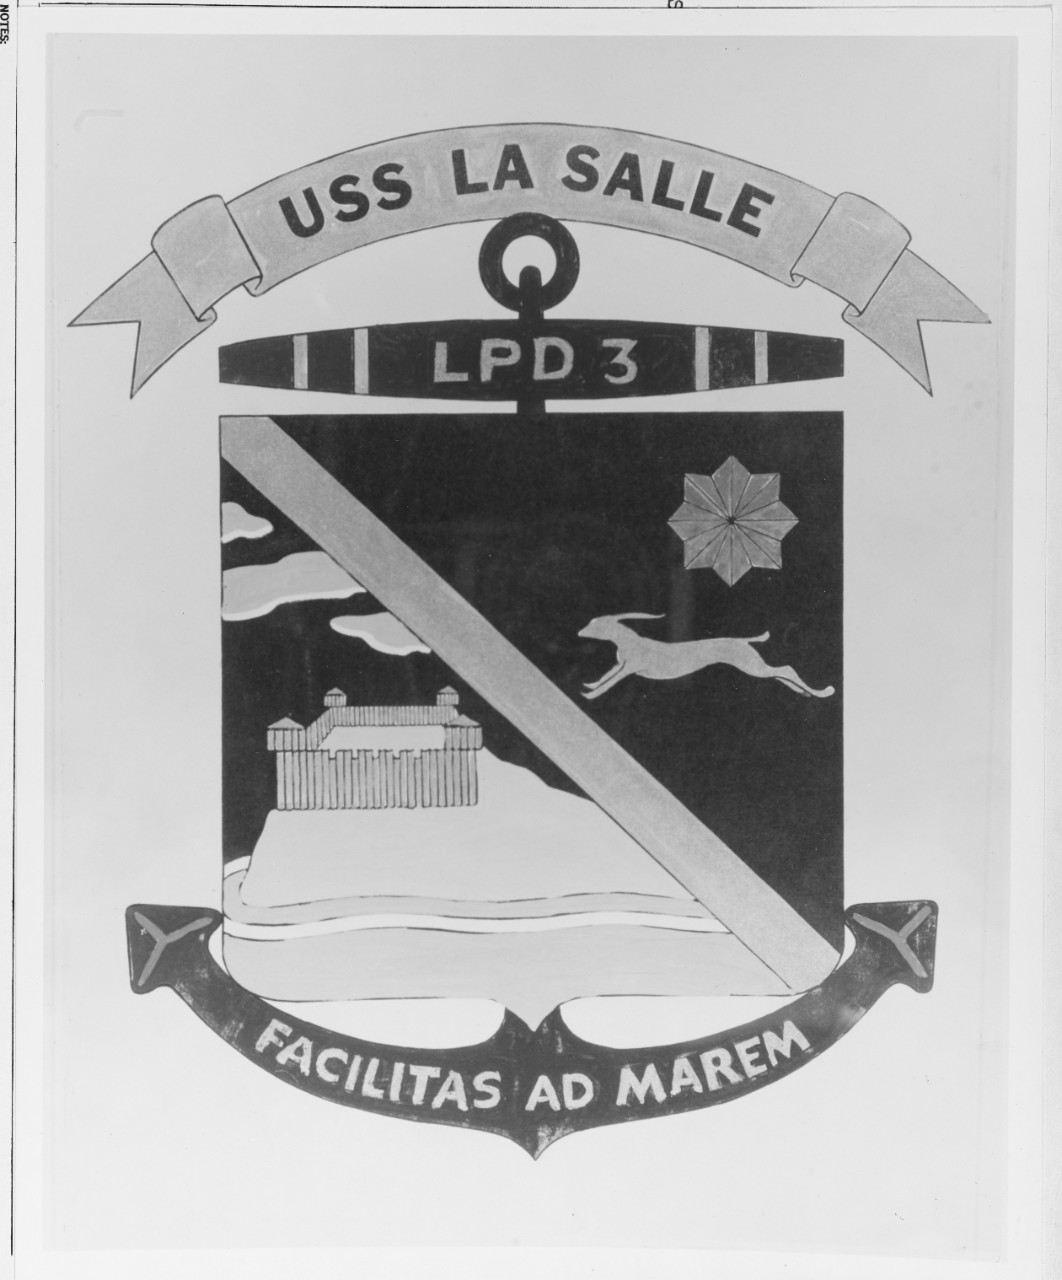 Insignia: USS LA SALLE (LPD-3)